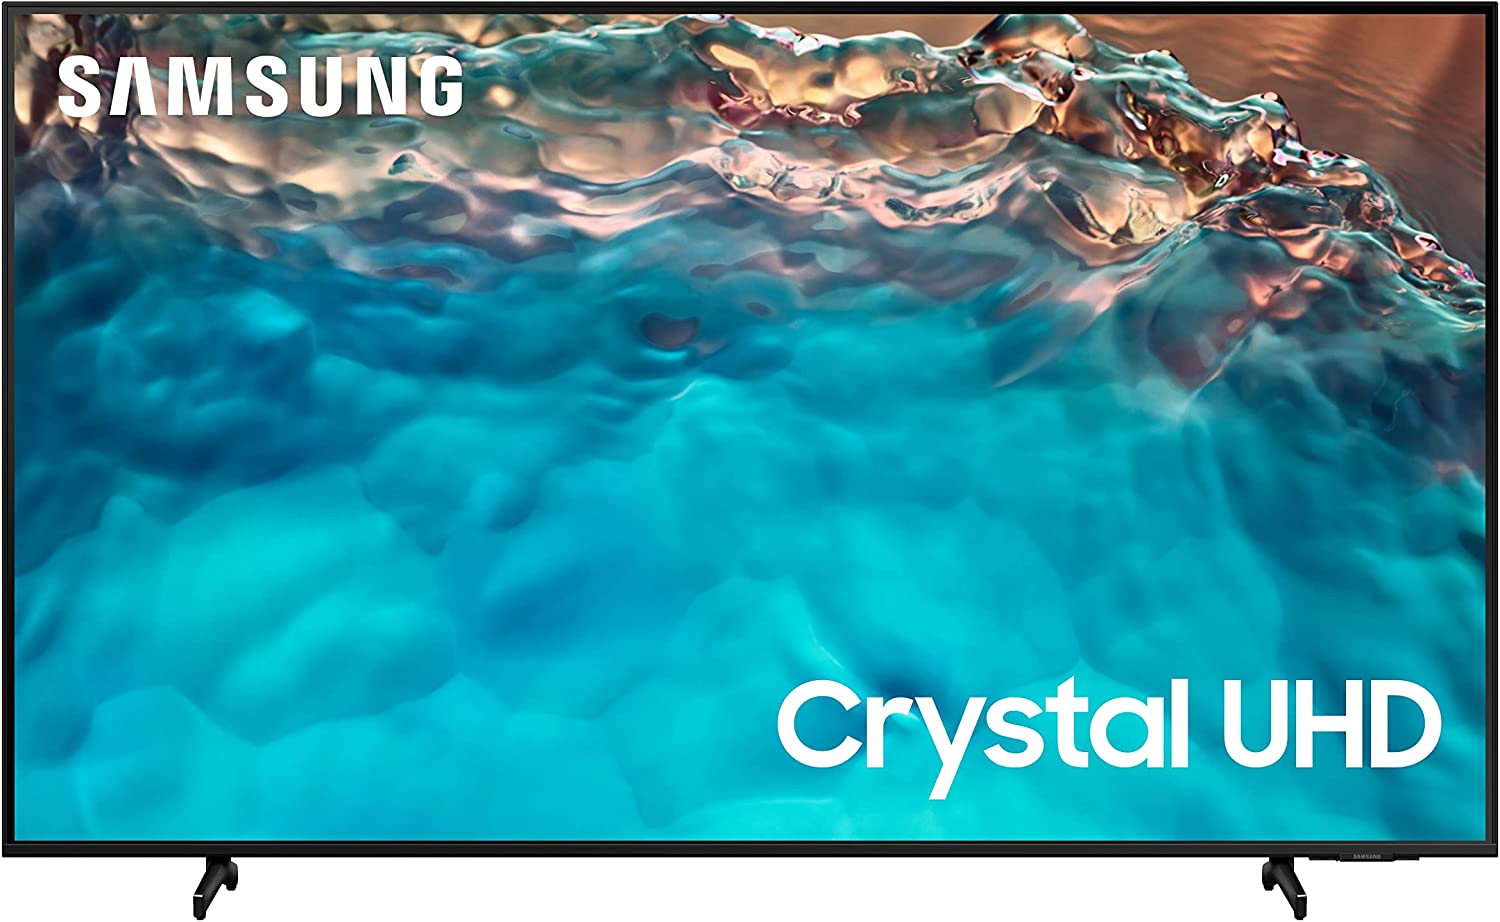 Samsung BU8000 Cristal UHD